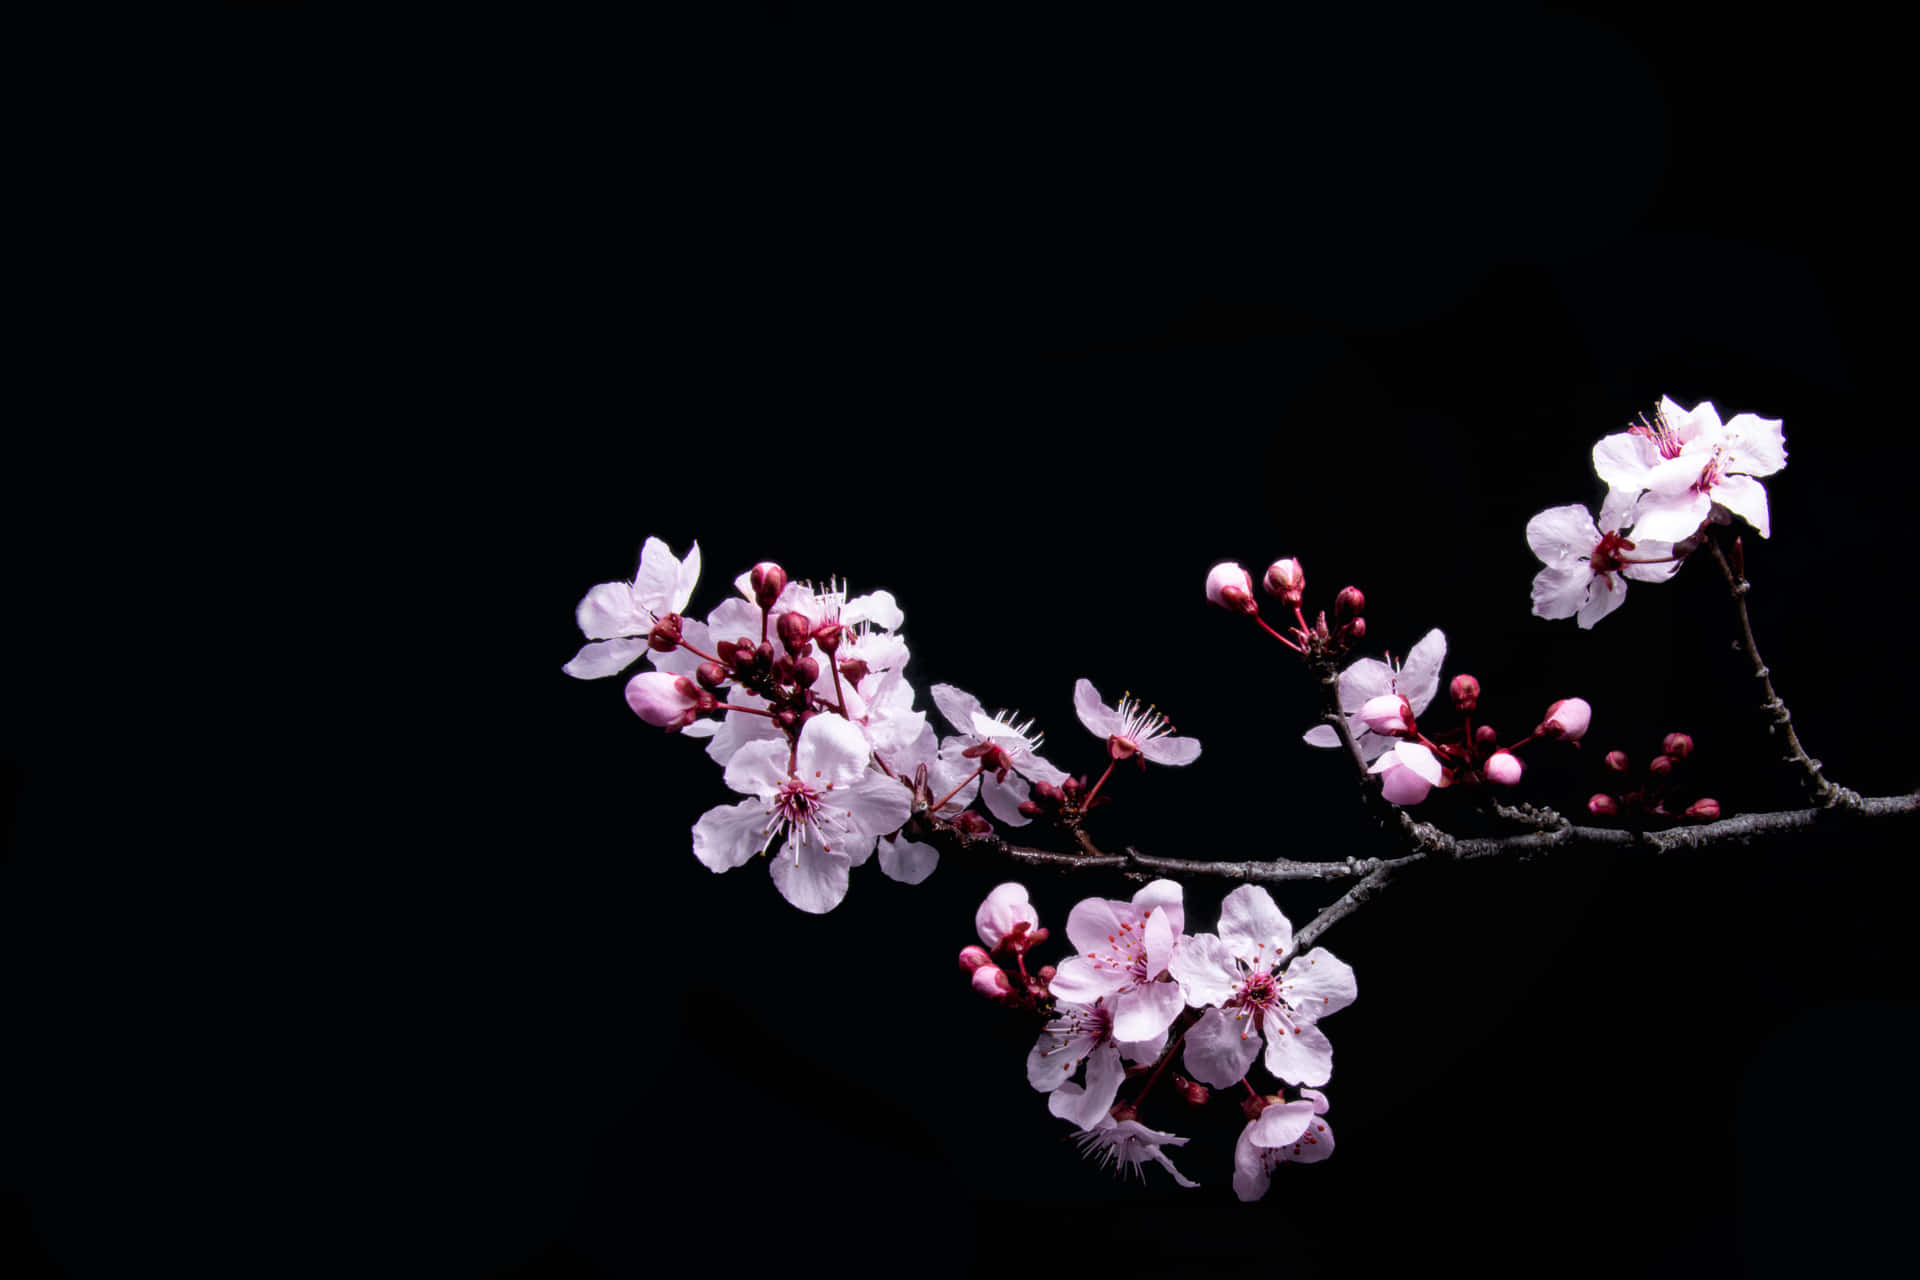 Einast Mit Kirschblüten Vor Schwarzem Hintergrund Wallpaper